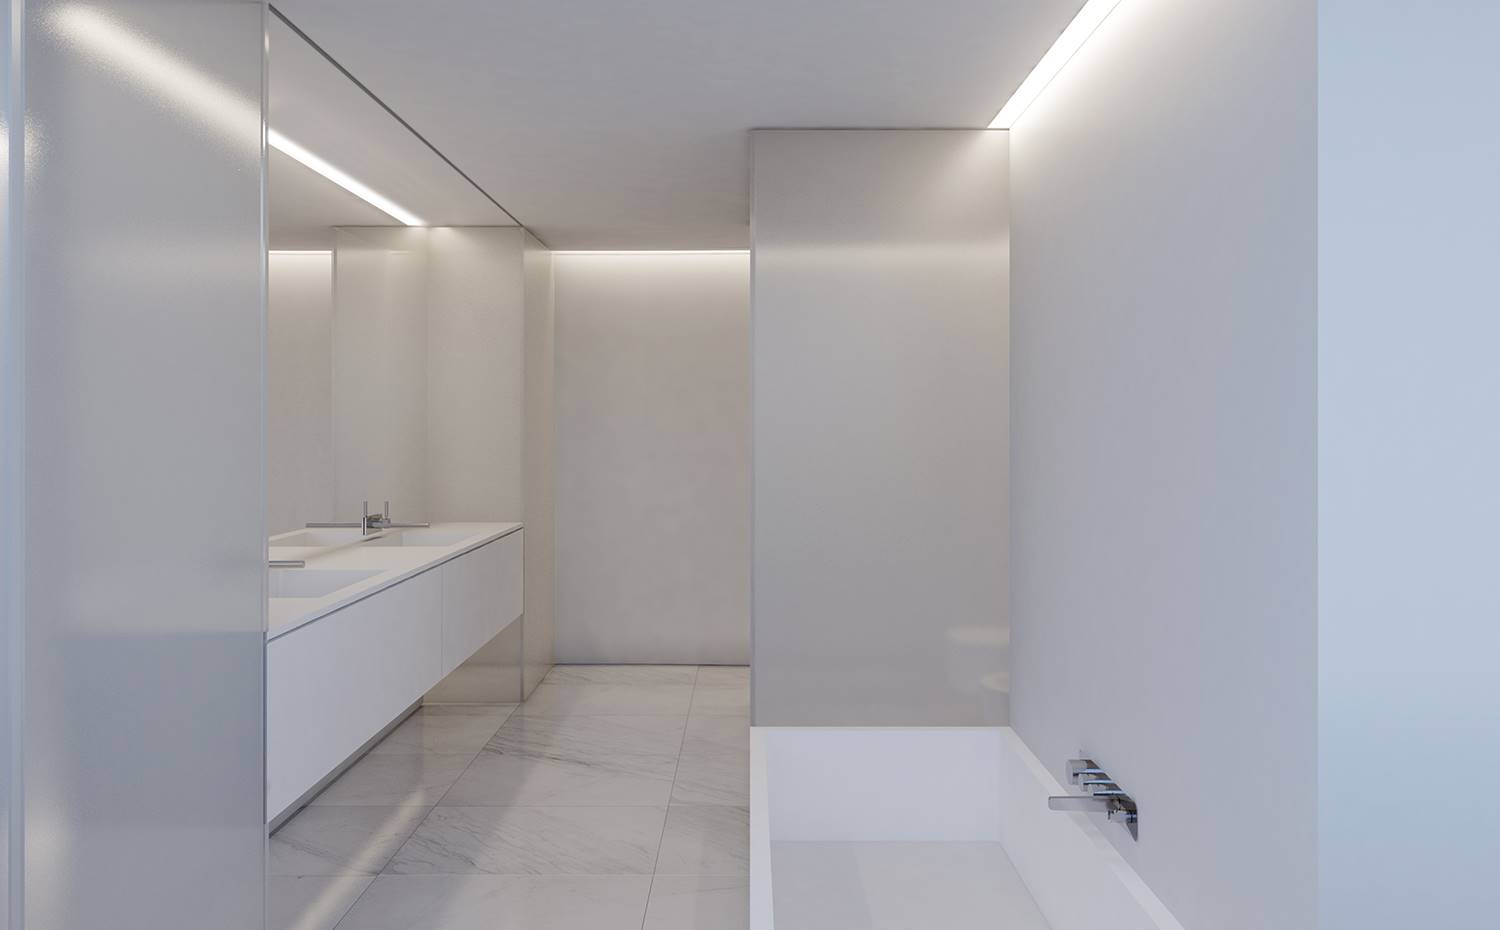 Cuarto de baño con divisiones en cristal translúcido, mobiliario blanco, revestimiento marmol blanco. El interior de la vivienda se mantiene brillante y minimalista, como este cuarto de baño con cerramientos translúcidos y acabados en marmol blanco.